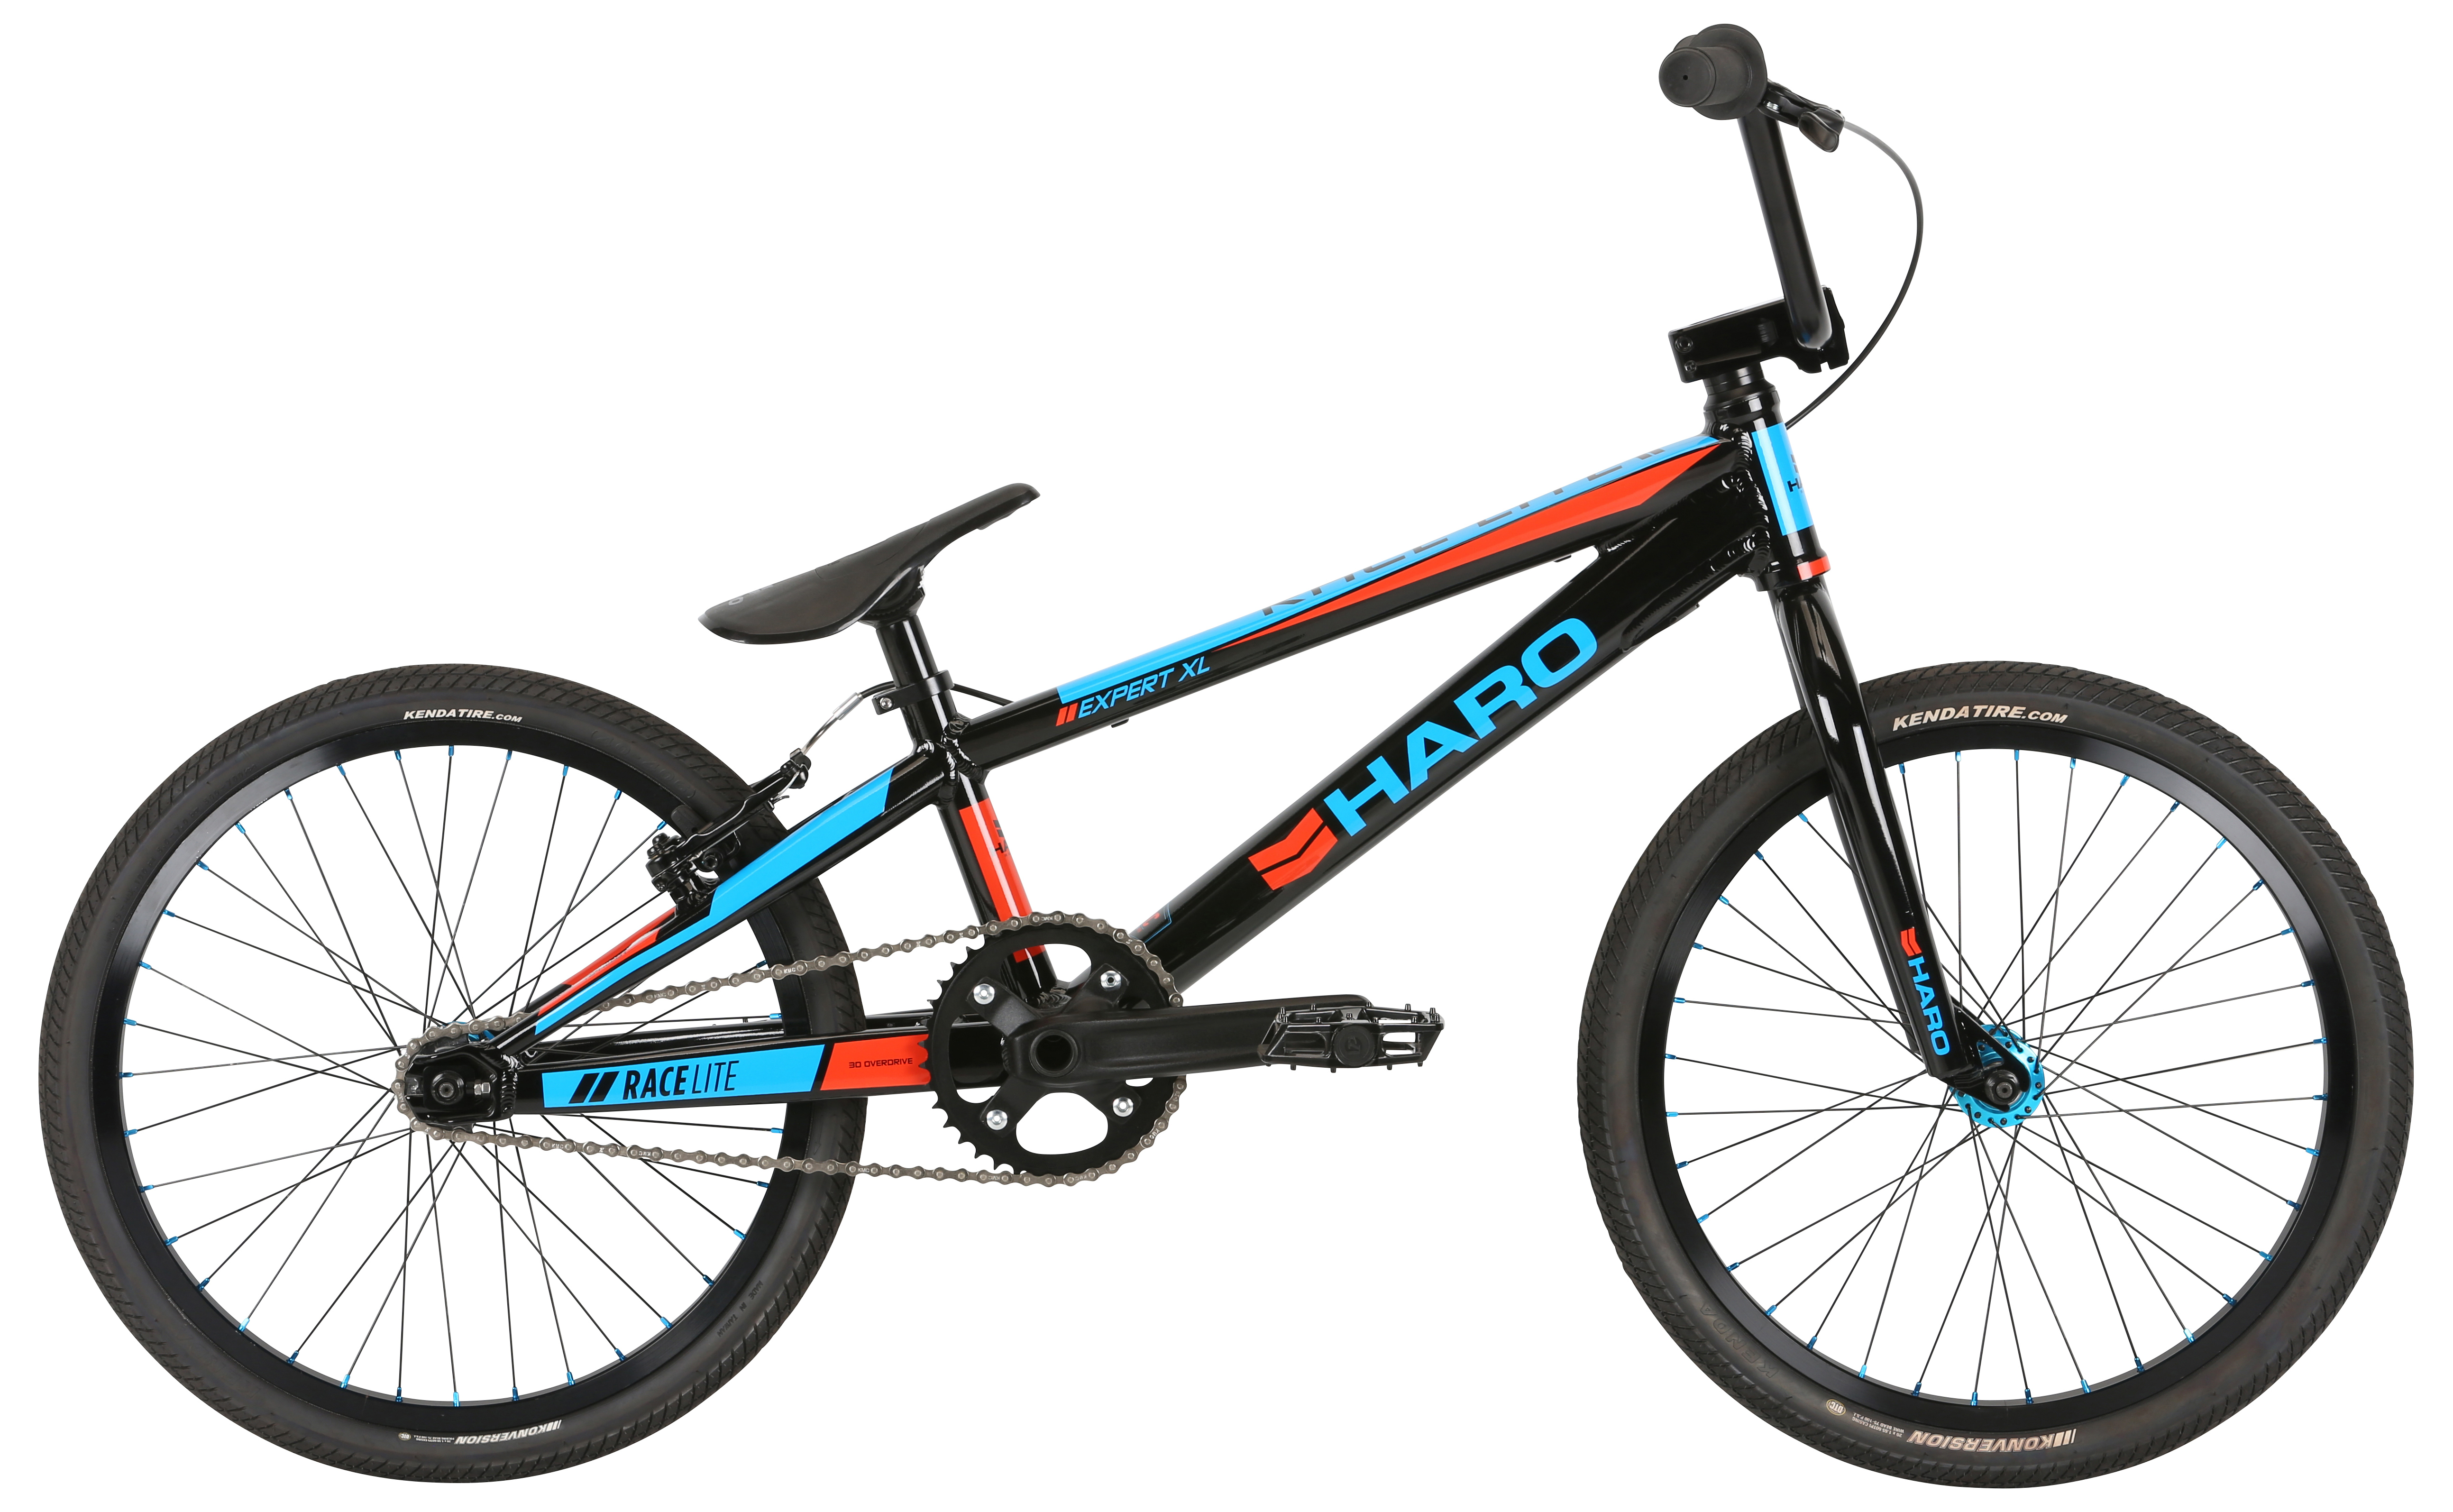  Отзывы о Велосипеде BMX Haro Expert XL 2019